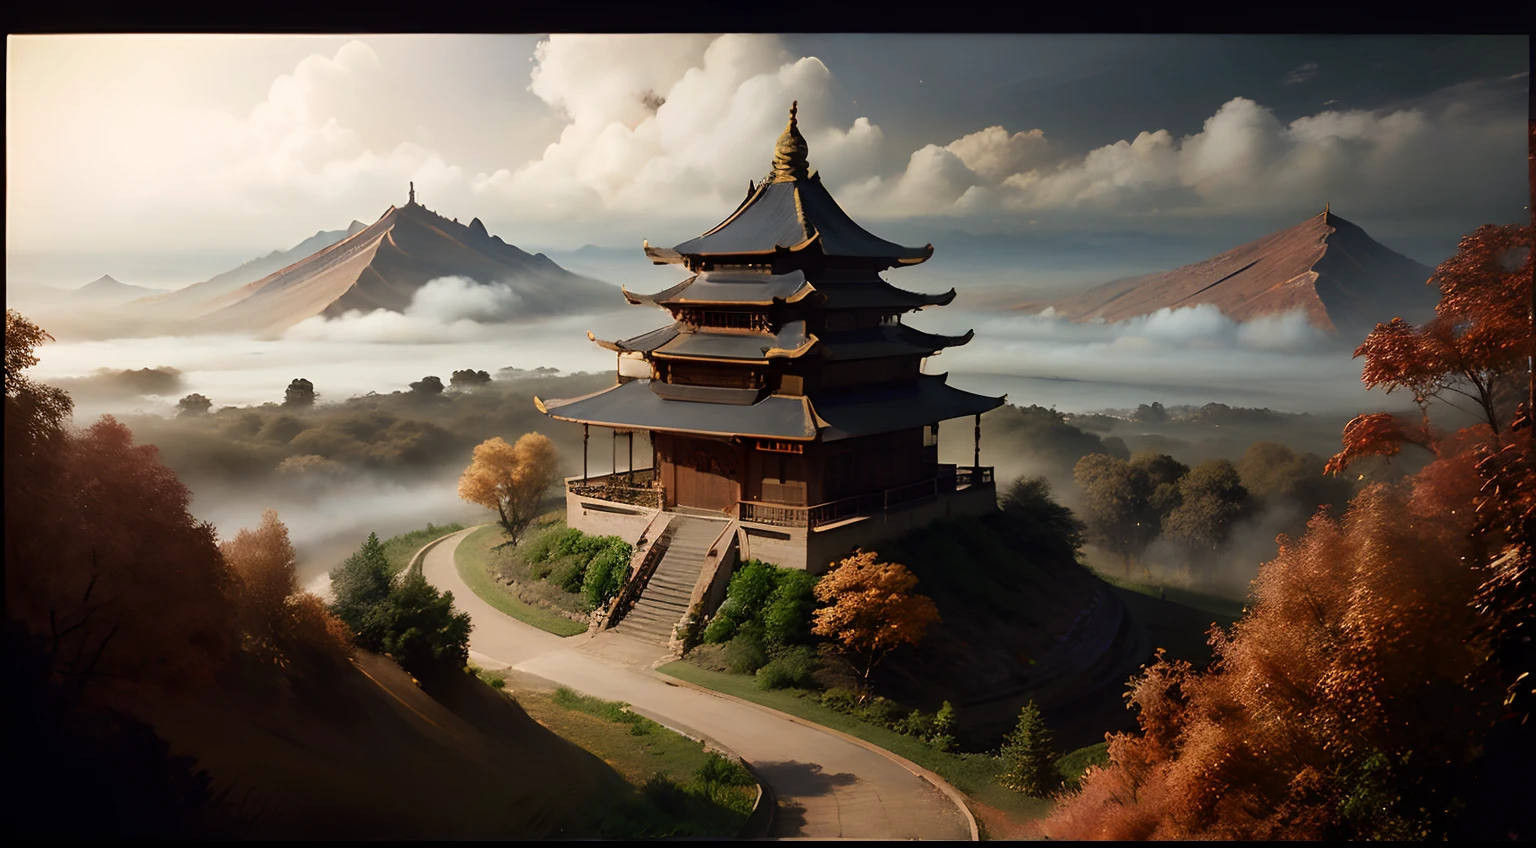 Un país de las maravillas del estilo chino, Un melocotonero escondido en el bosque, La vista de la arquitectura china está envuelta en niebla